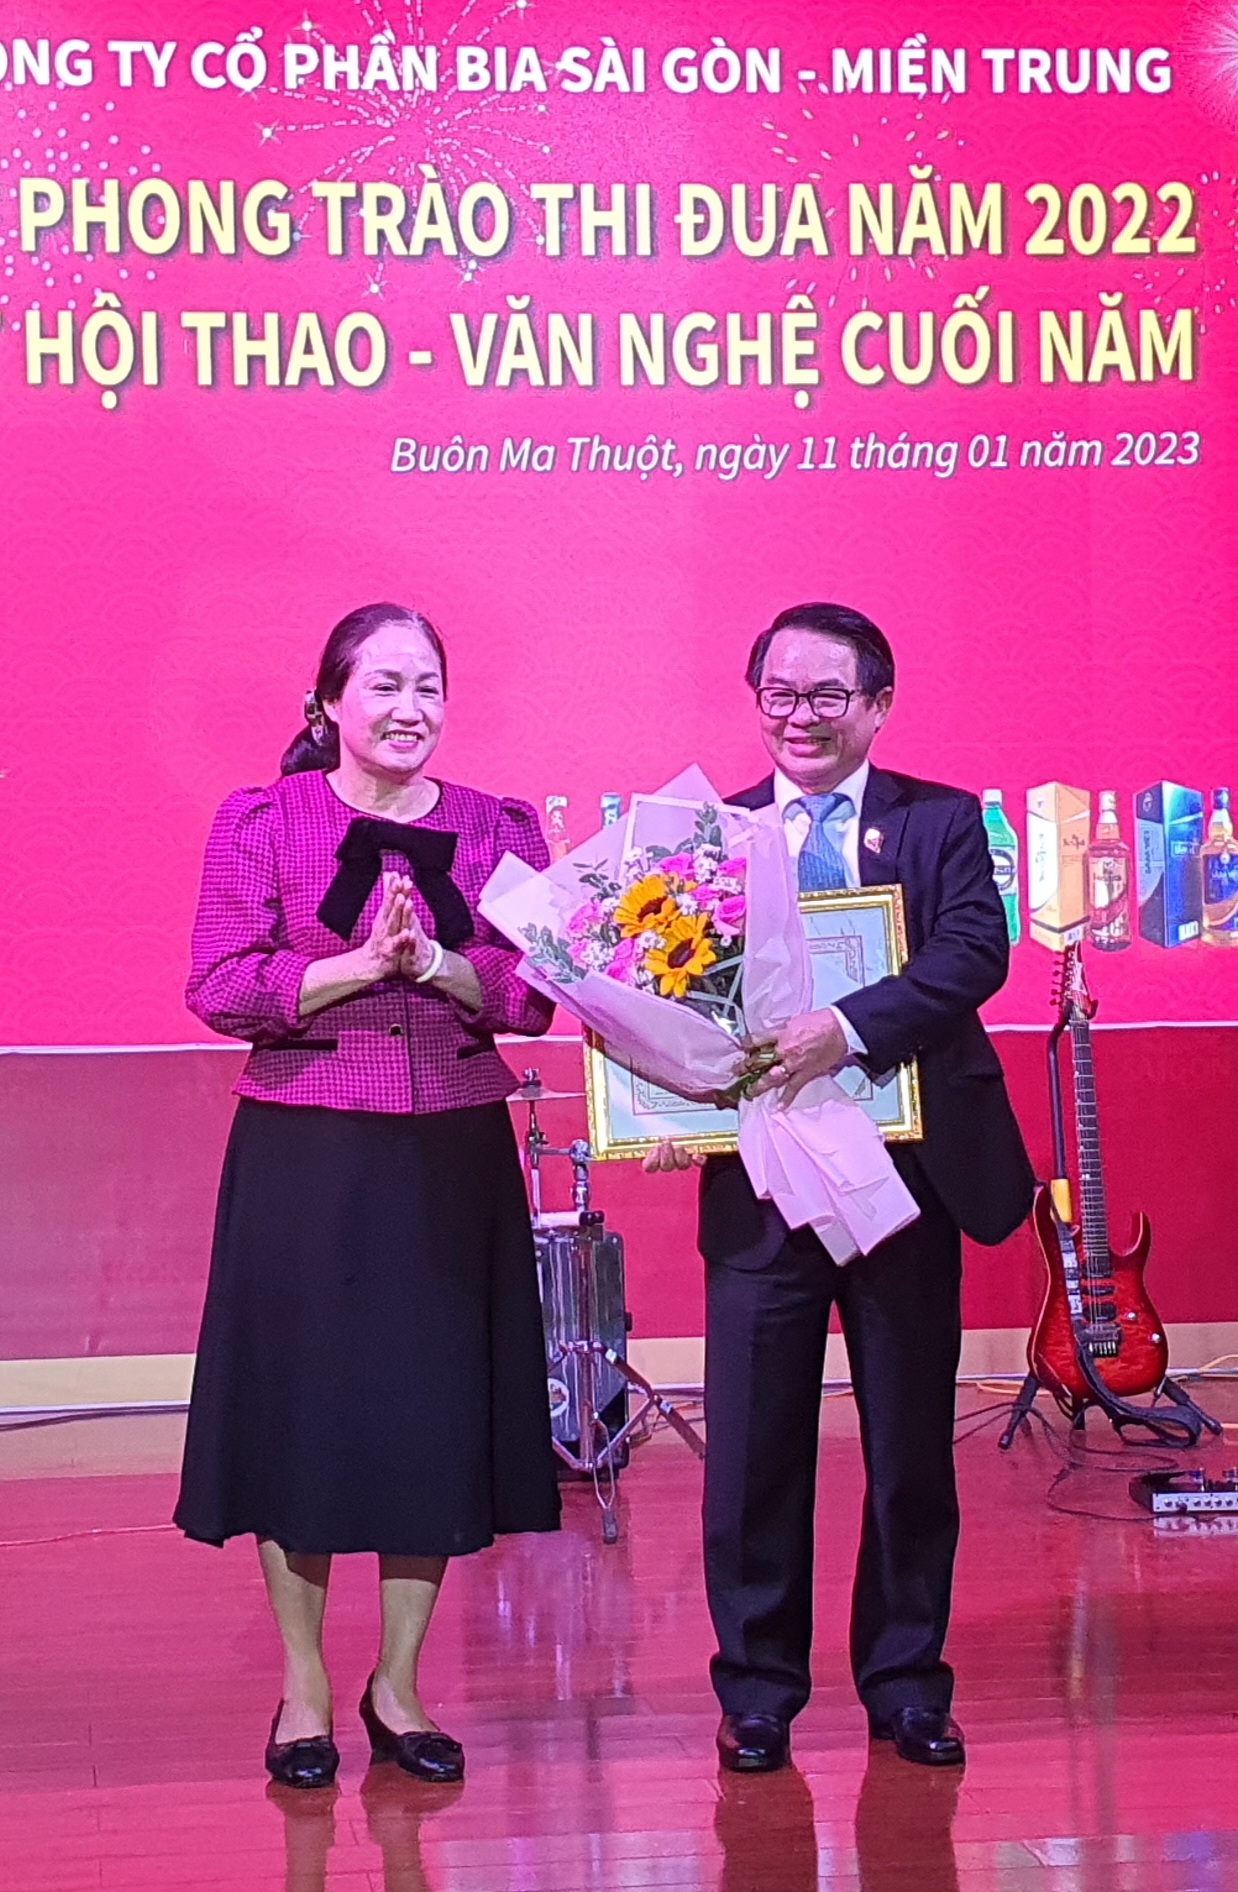 Ông Huỳnh Văn Dũng - Tổng giám đốc Công ty Cổ phần Bia Sài Gòn - Miền Trung nhận bằng khen của ASVHO